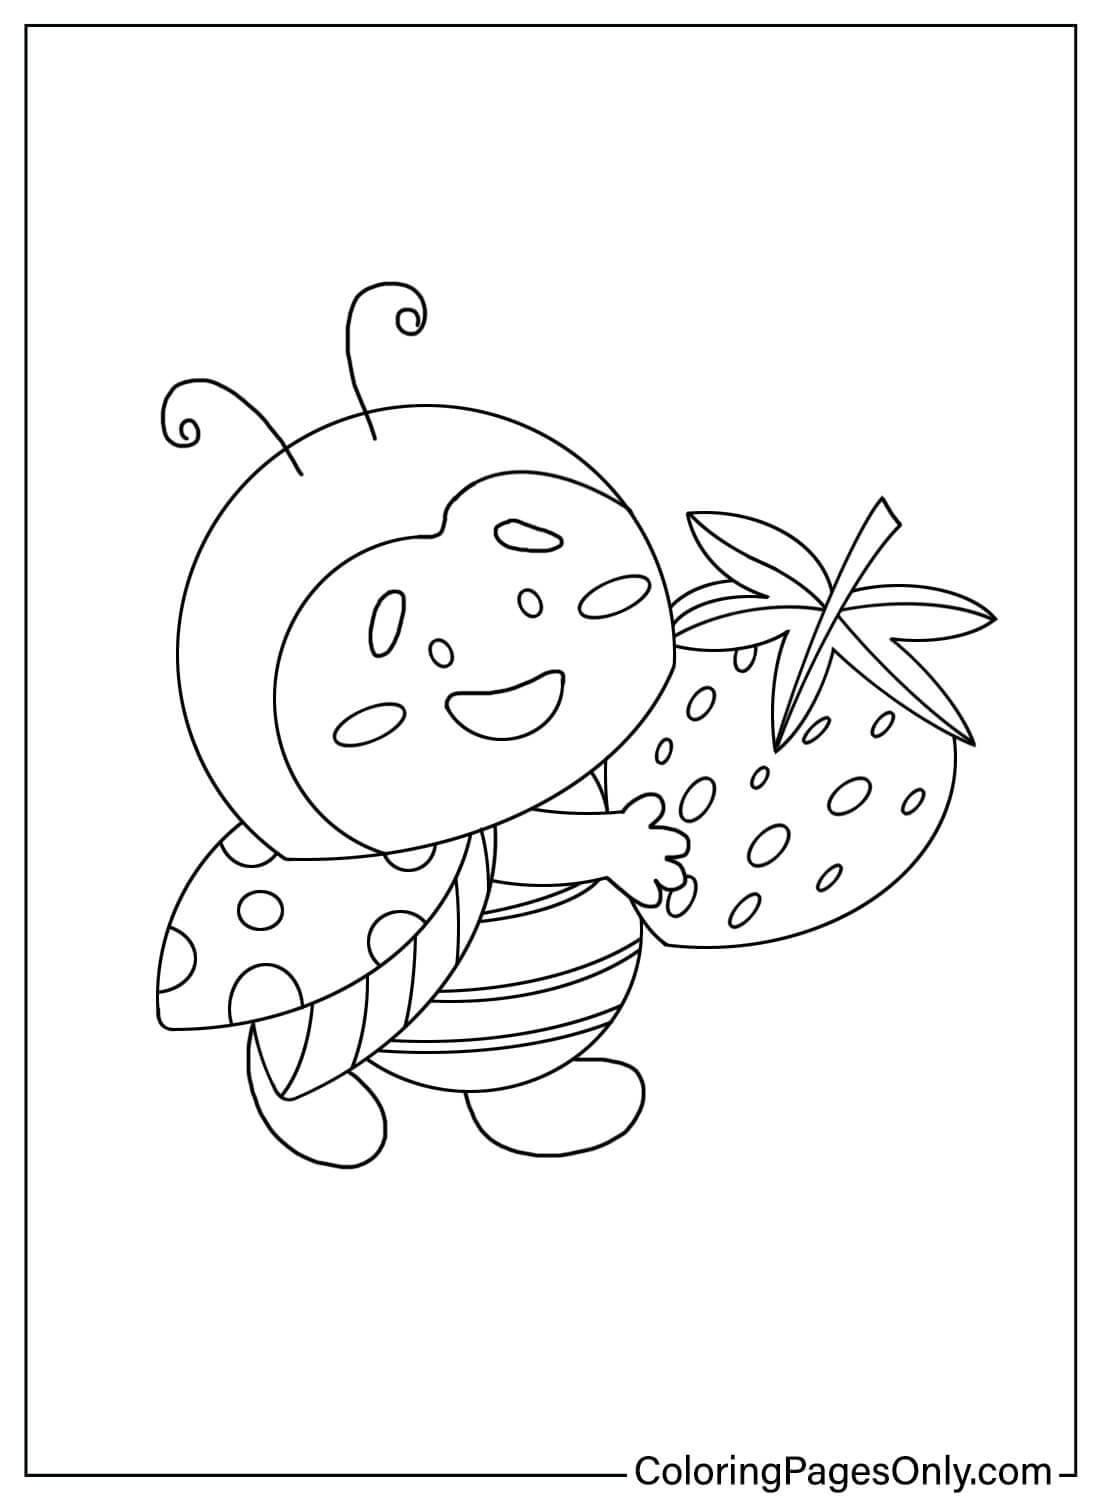 Página para colorear de Mariquita con Fresa de Ladybug